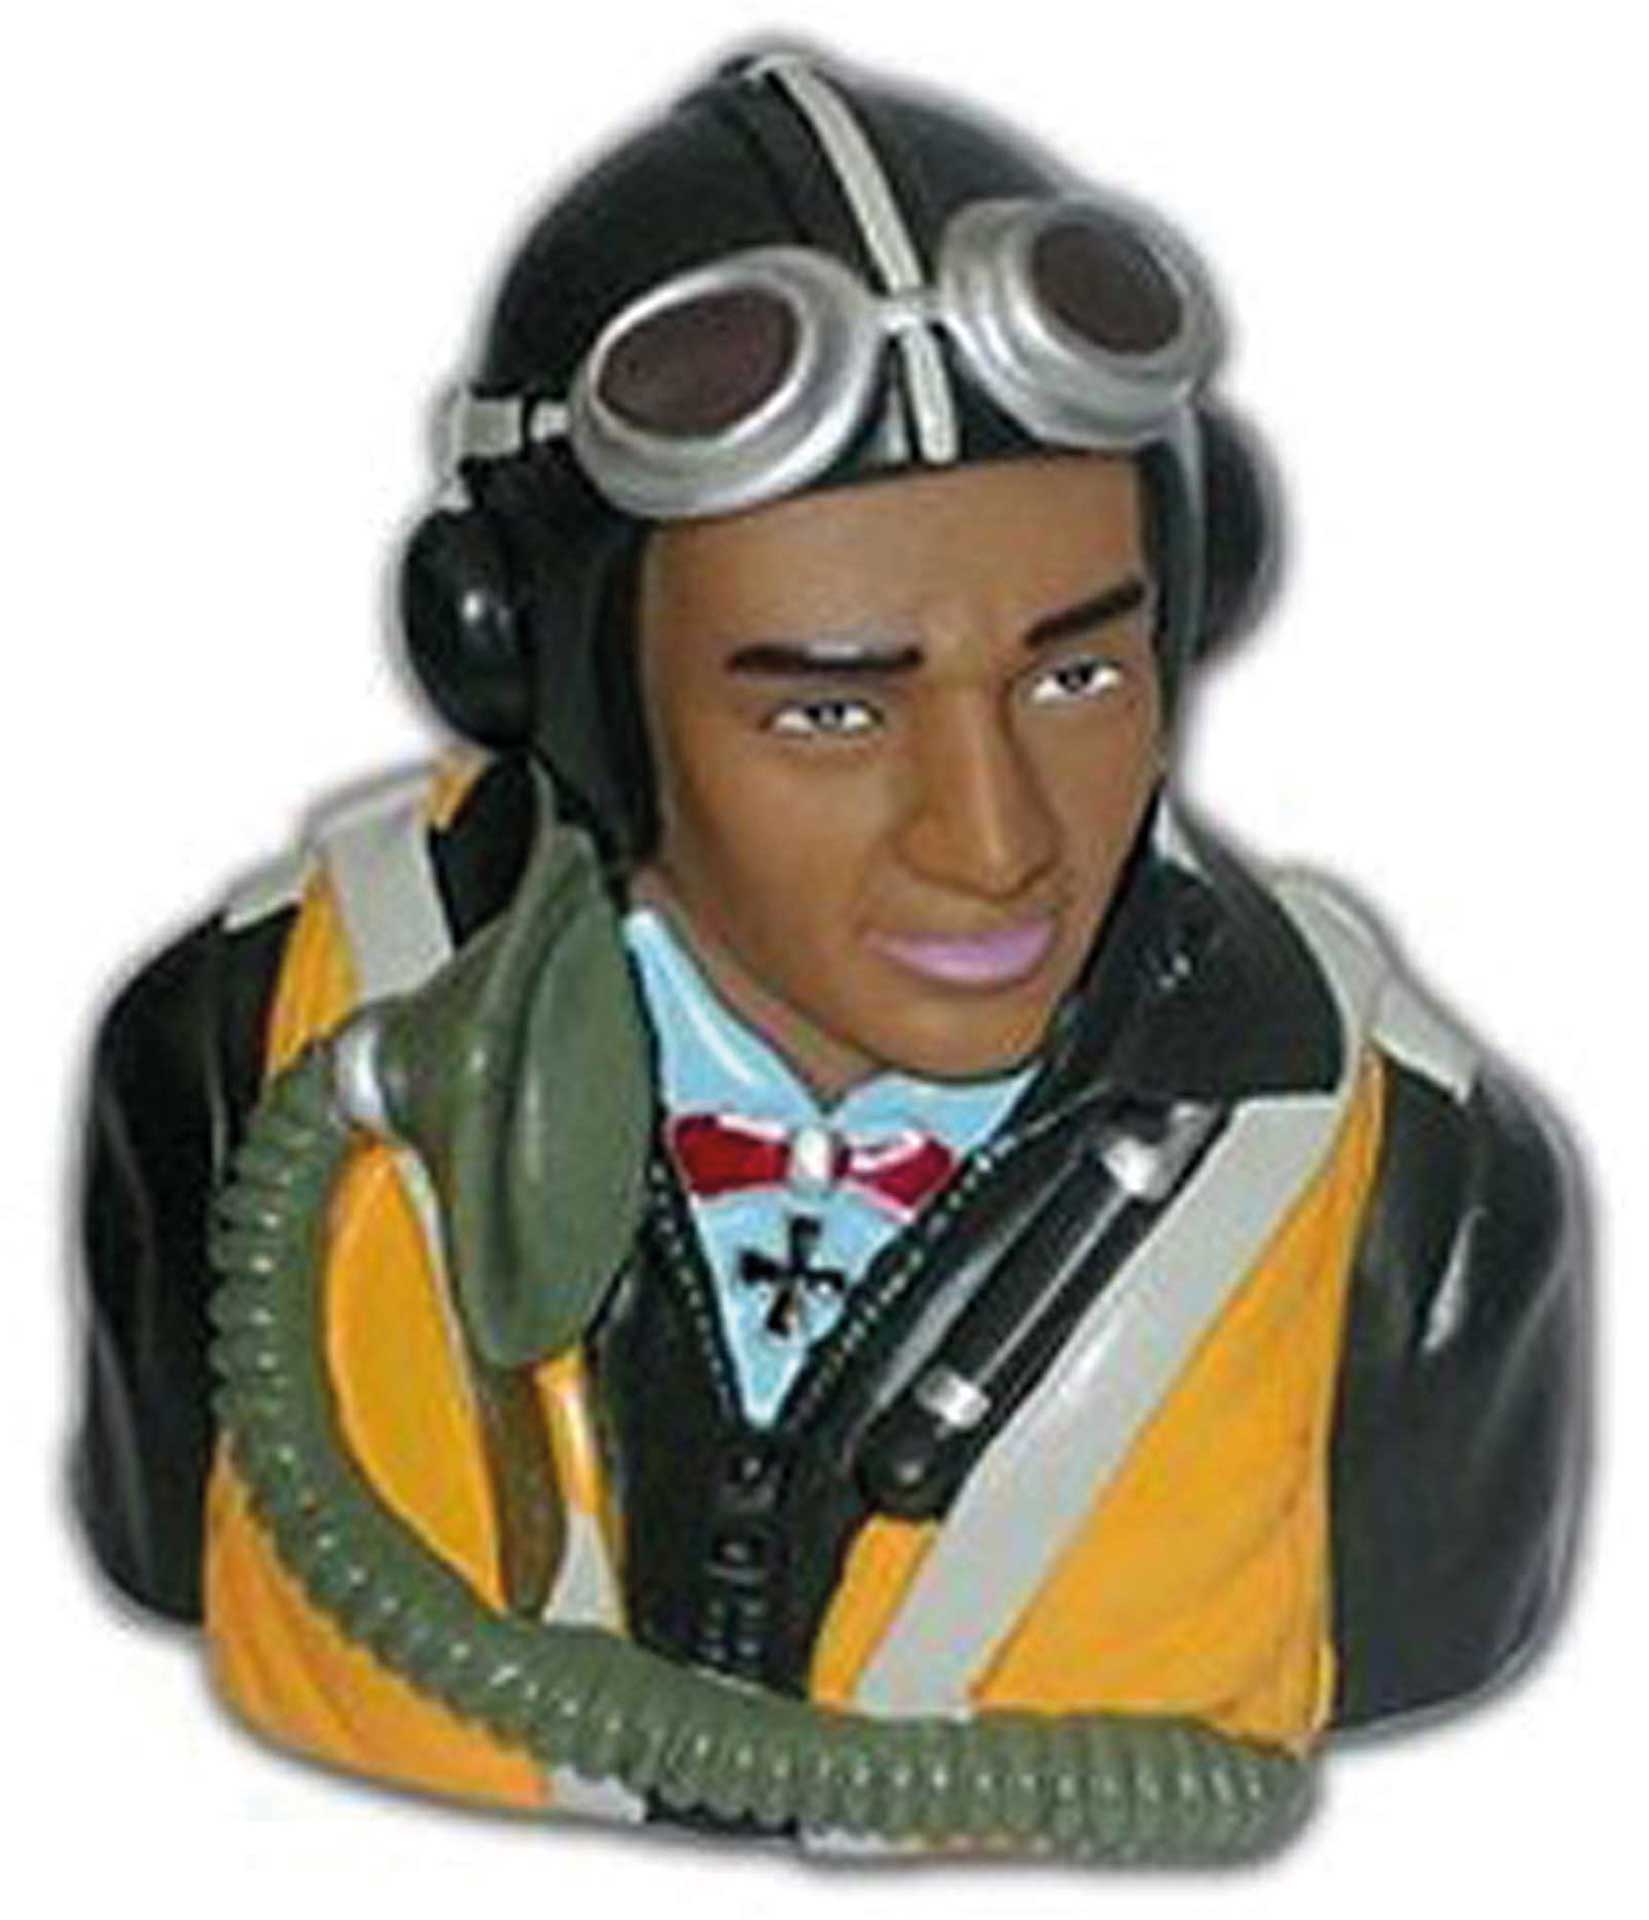 Planet-Hobby 1/5 WWII German Pilot Höhe 100mm, Breite 93mm, Tiefe 60mm Gewicht: 68g